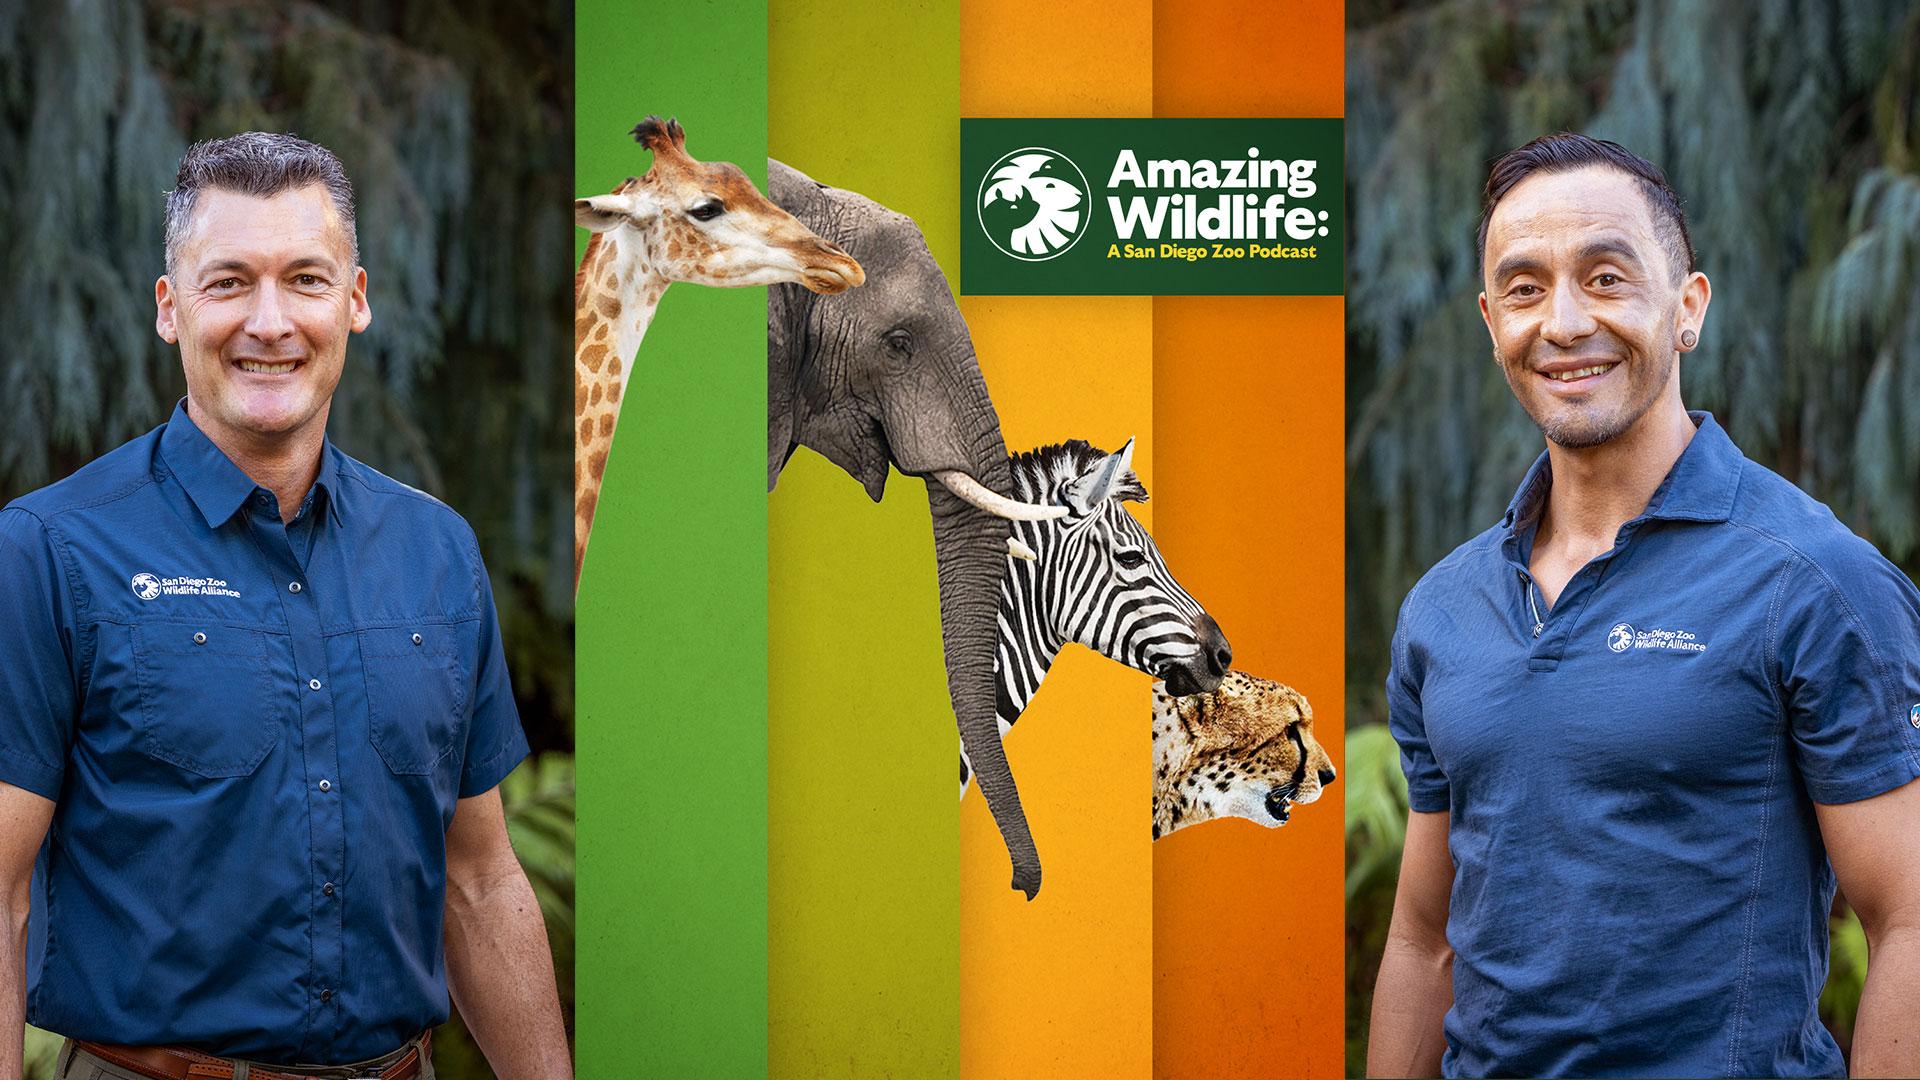 Amazing Wildlife: A San Diego Zoo Podcast